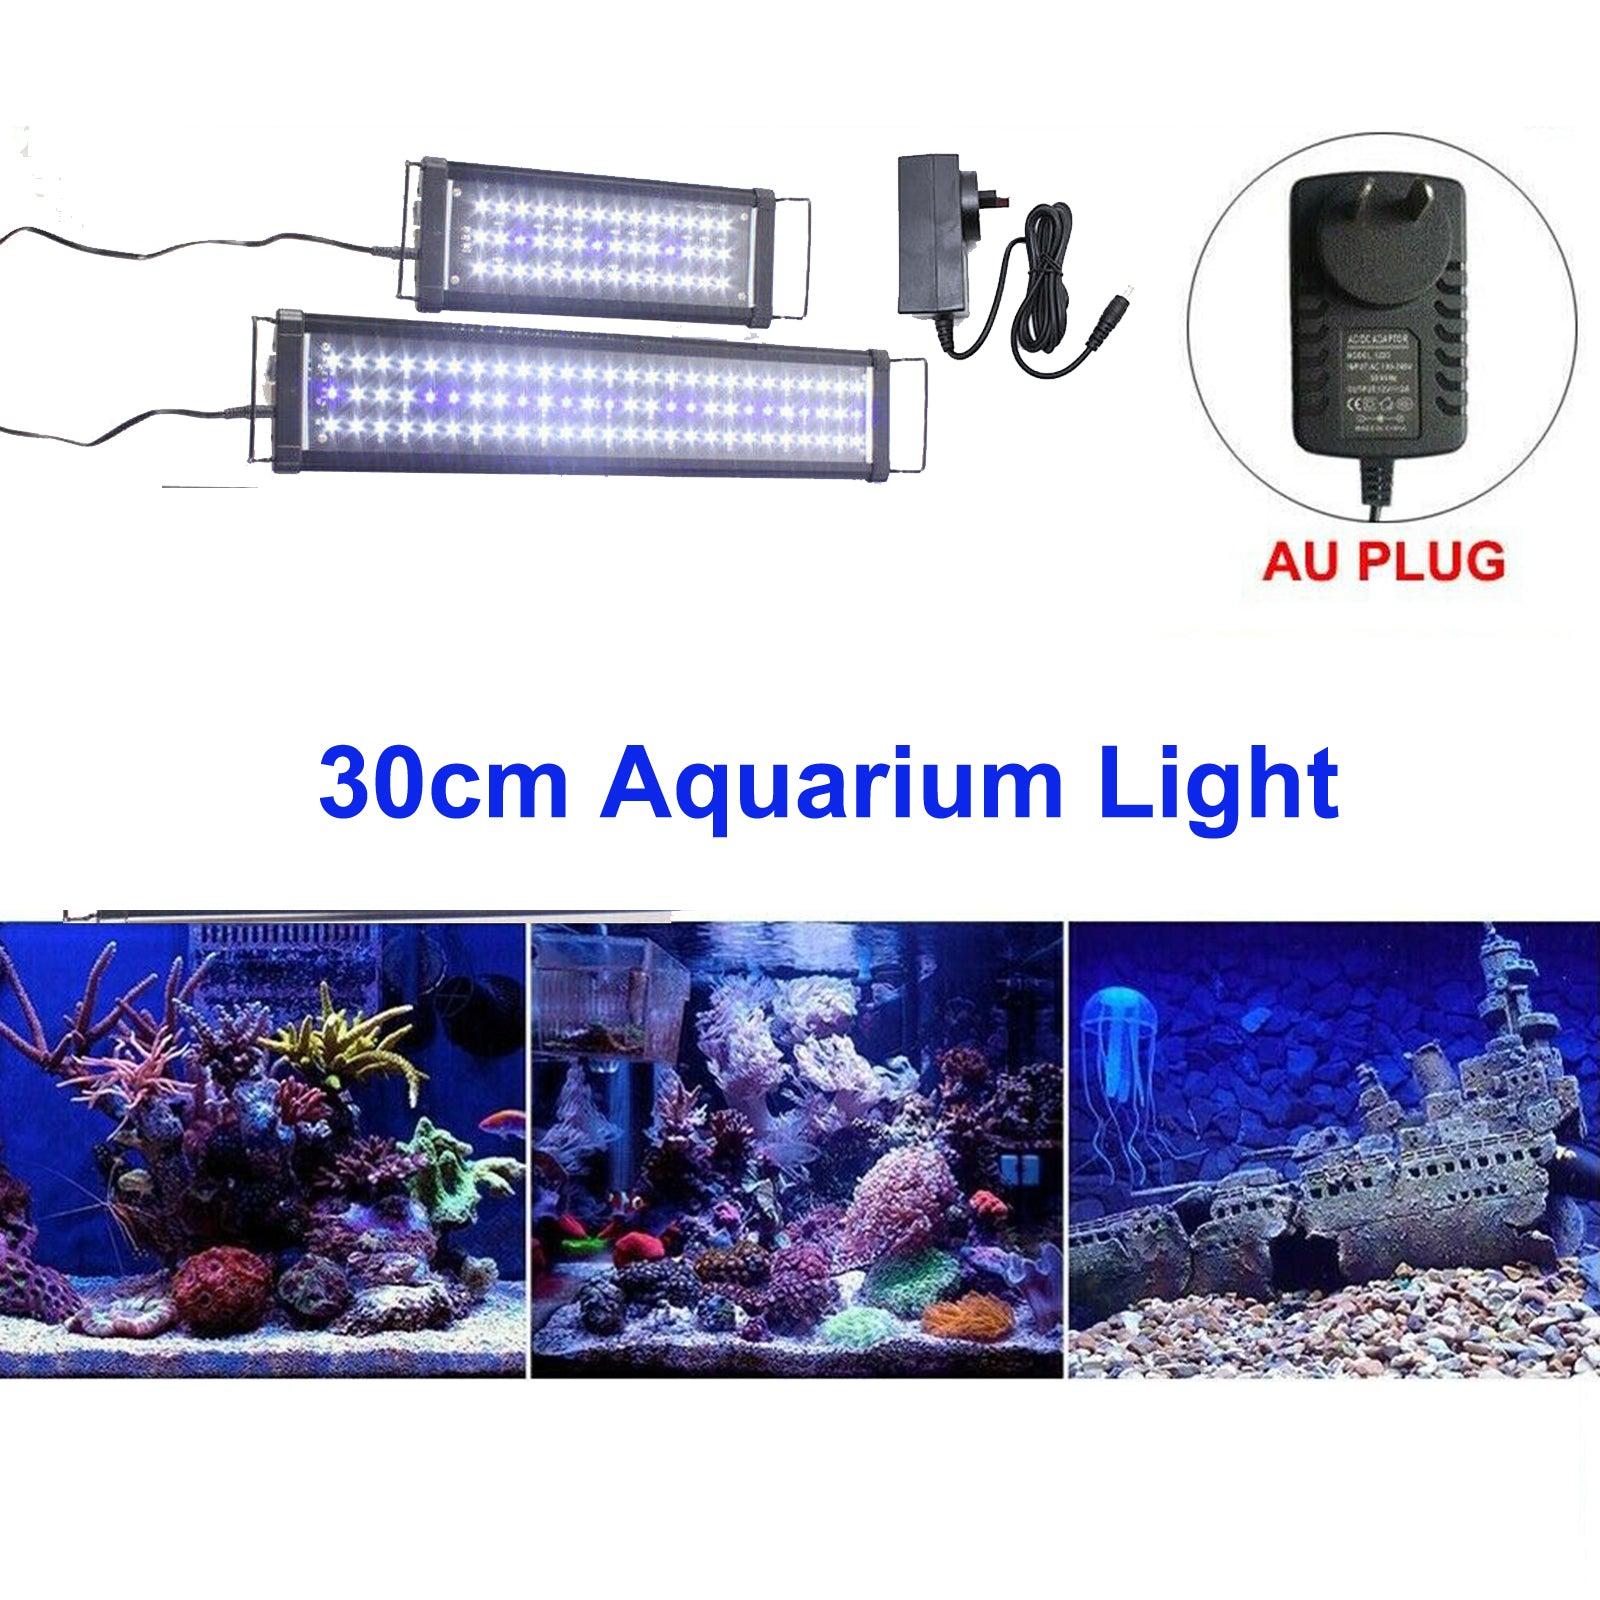 30cm Aquarium Light | Full Spectrum LED Lamp for Aqua Plants, Fish Tanks, Bars